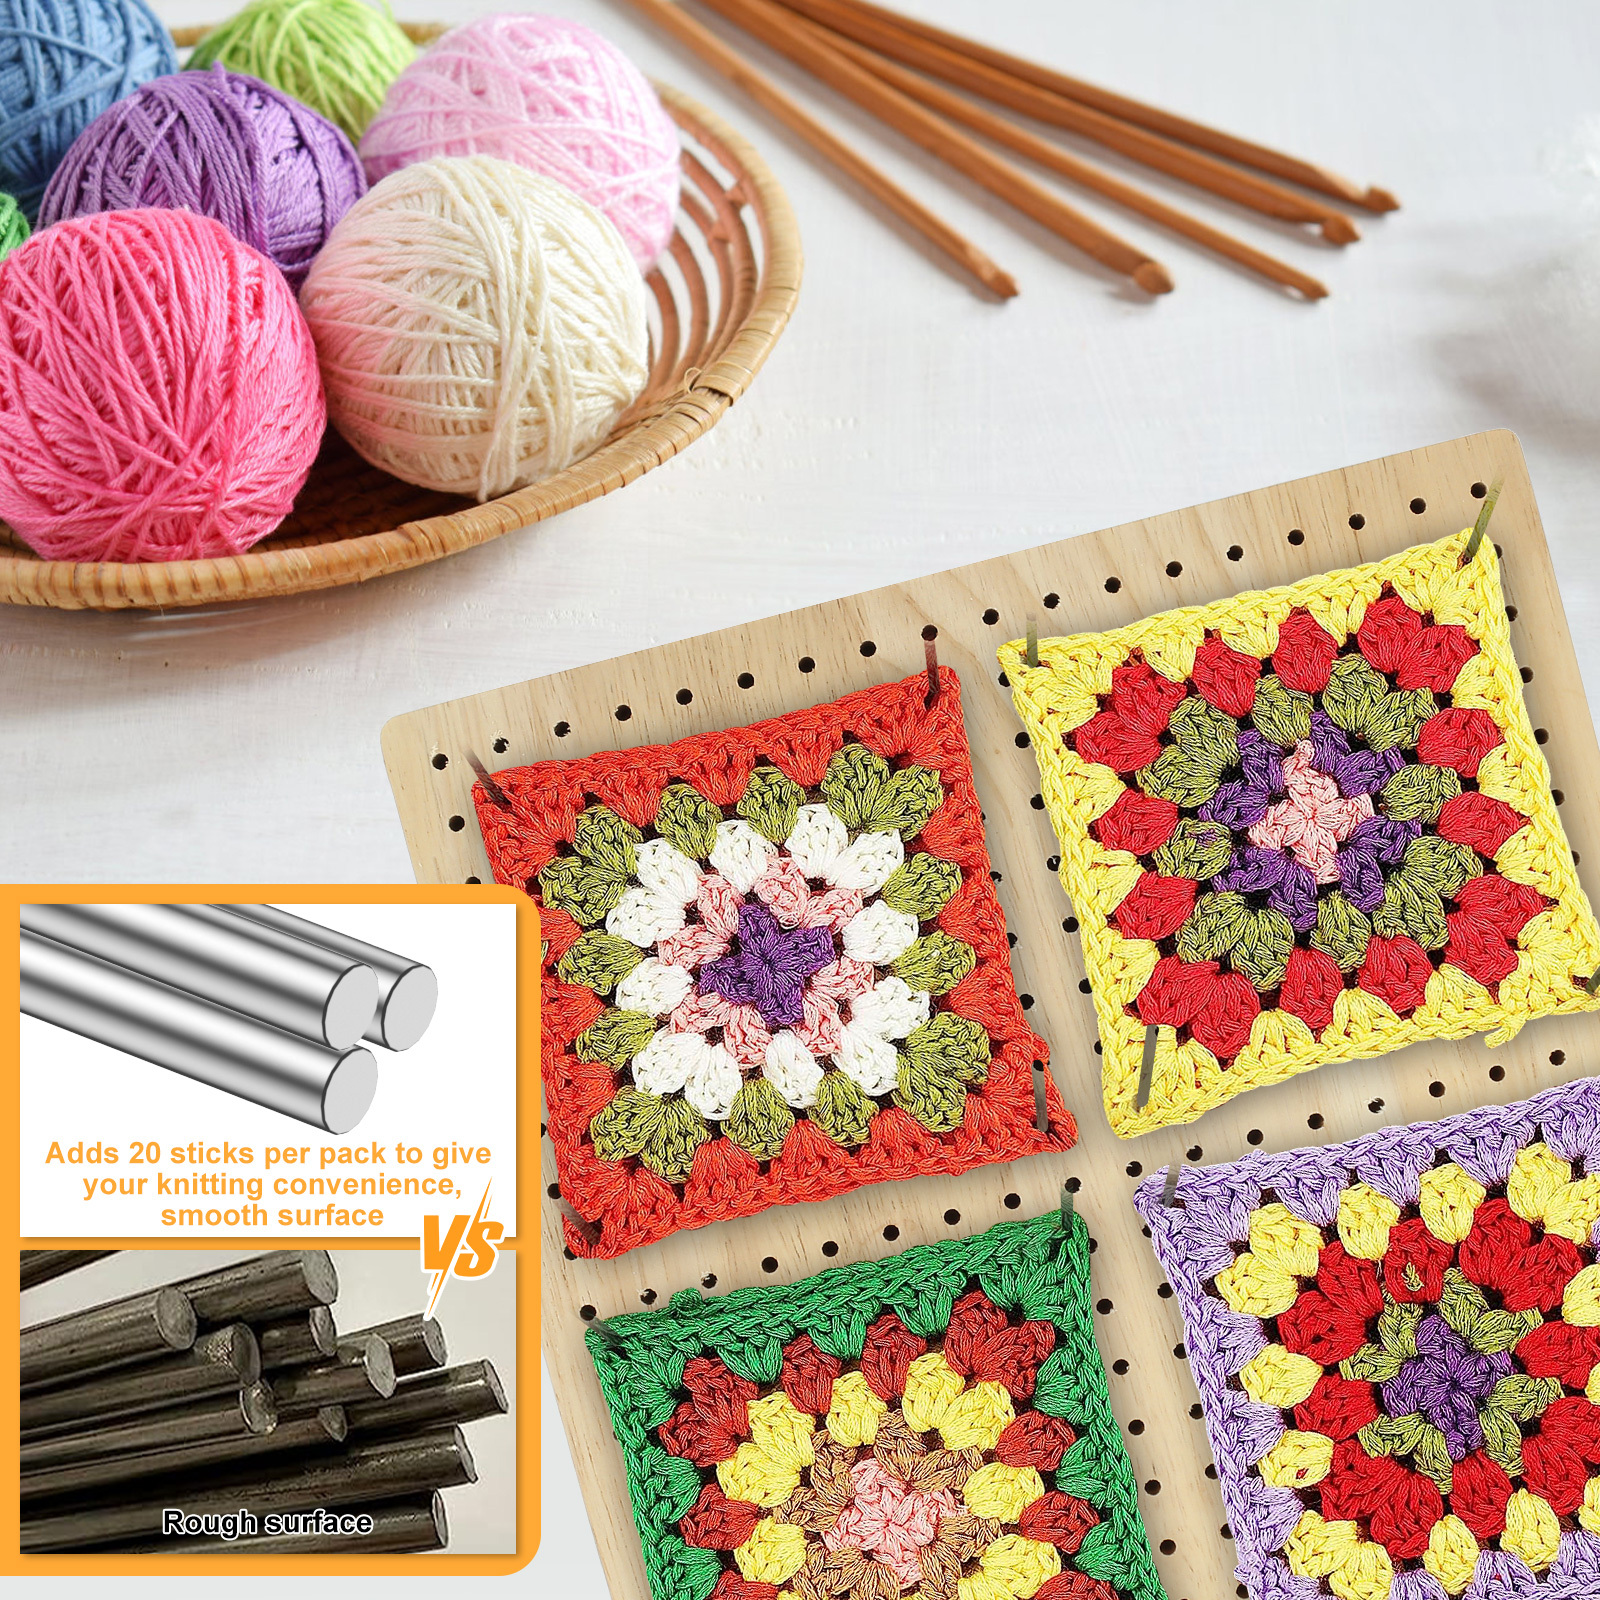  9.25 Inches Crochet Blocking Board, Granny Square